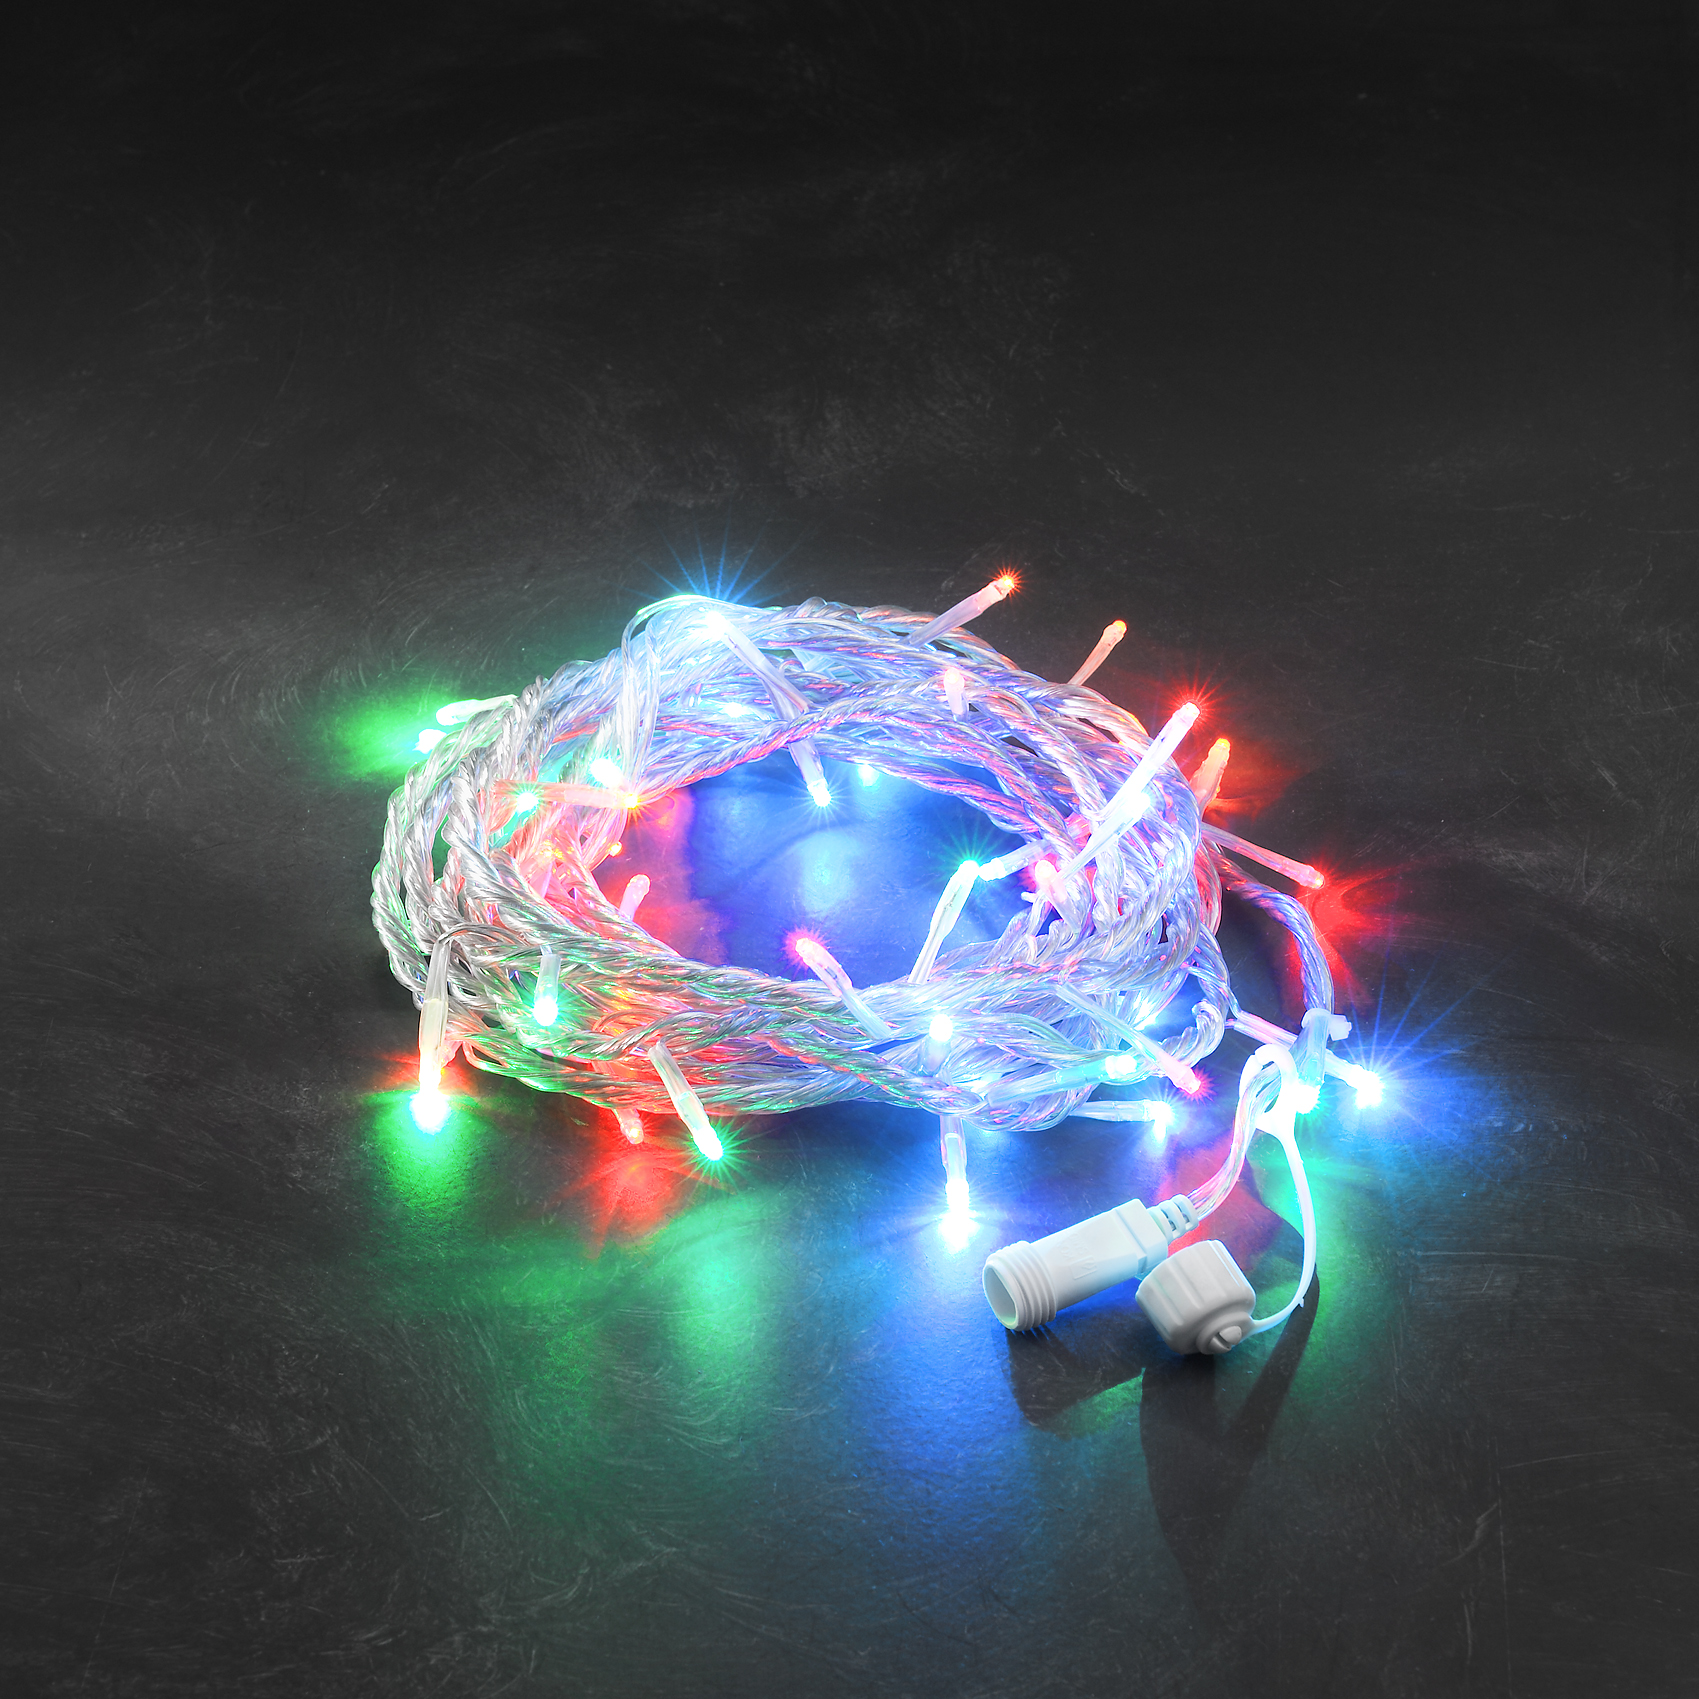 LED Sistem 24V - sirag cu 50 de LED-uri, lumina multicolora, 5m lungime